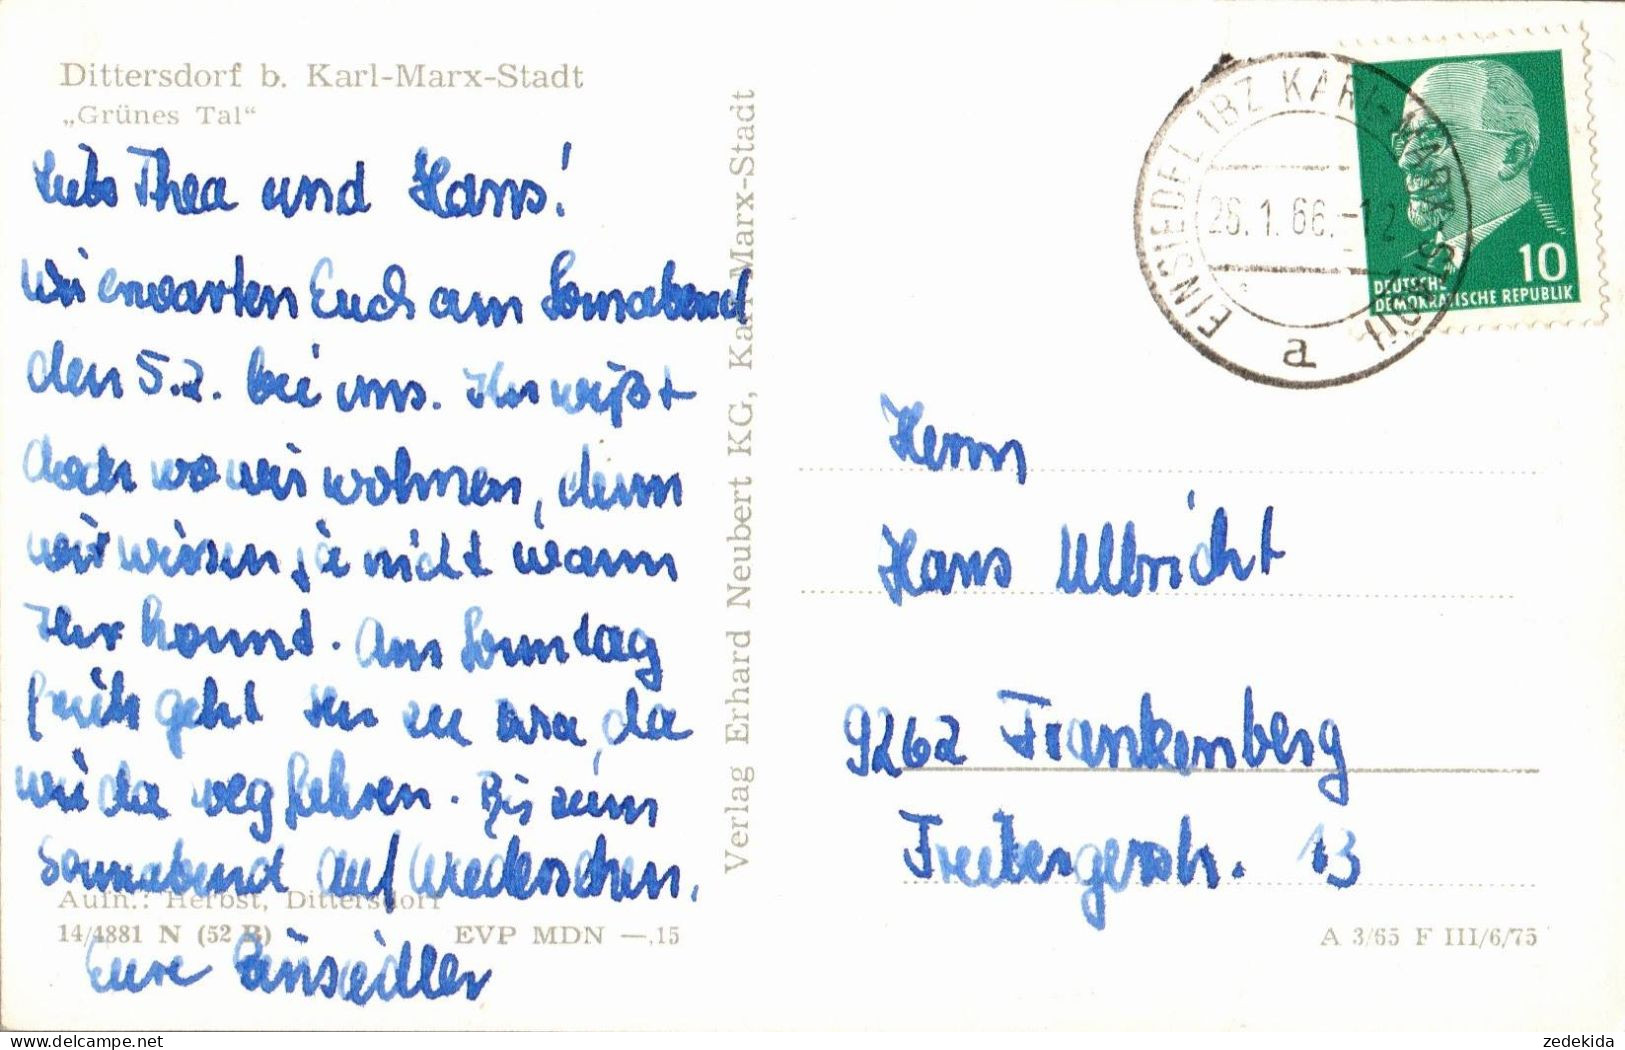 H2276 - Dittersdorf Bei Karl Marx Stadt - Verlag Erhard Neubert - Gel Einsiedel - Chemnitz (Karl-Marx-Stadt 1953-1990)